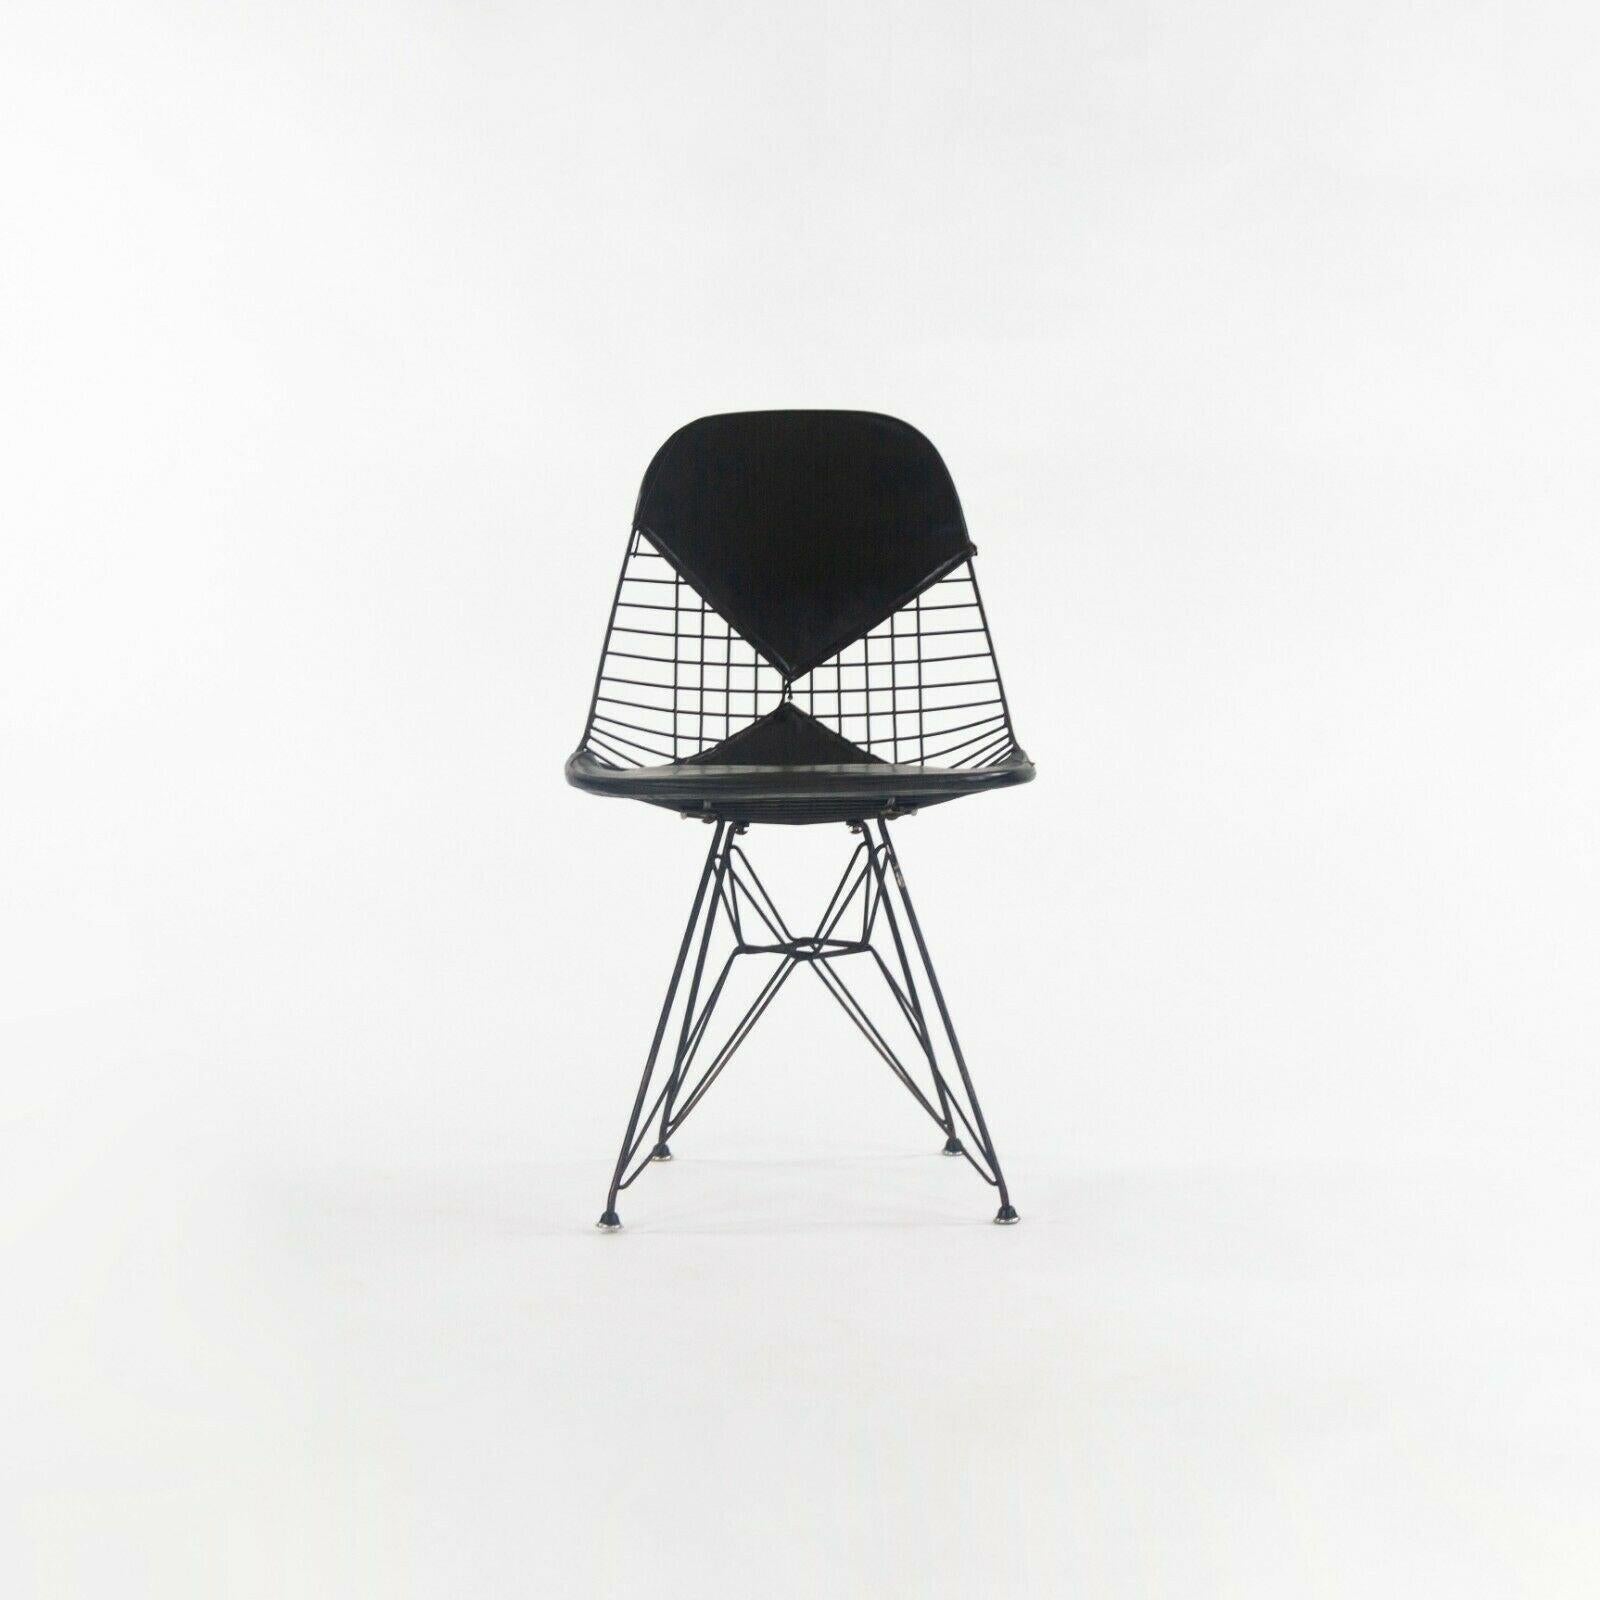 Zum Verkauf steht ein Satz von sechs Eames DKR-2 Draht-Esszimmerstühlen mit schwarzen Bikini-Pads, hergestellt ca. 1957. Der DKR wurde von Charles und Ray Eames entworfen und von Herman Miller hergestellt. Die schwarzen Drahtgestelle und Sitze sind